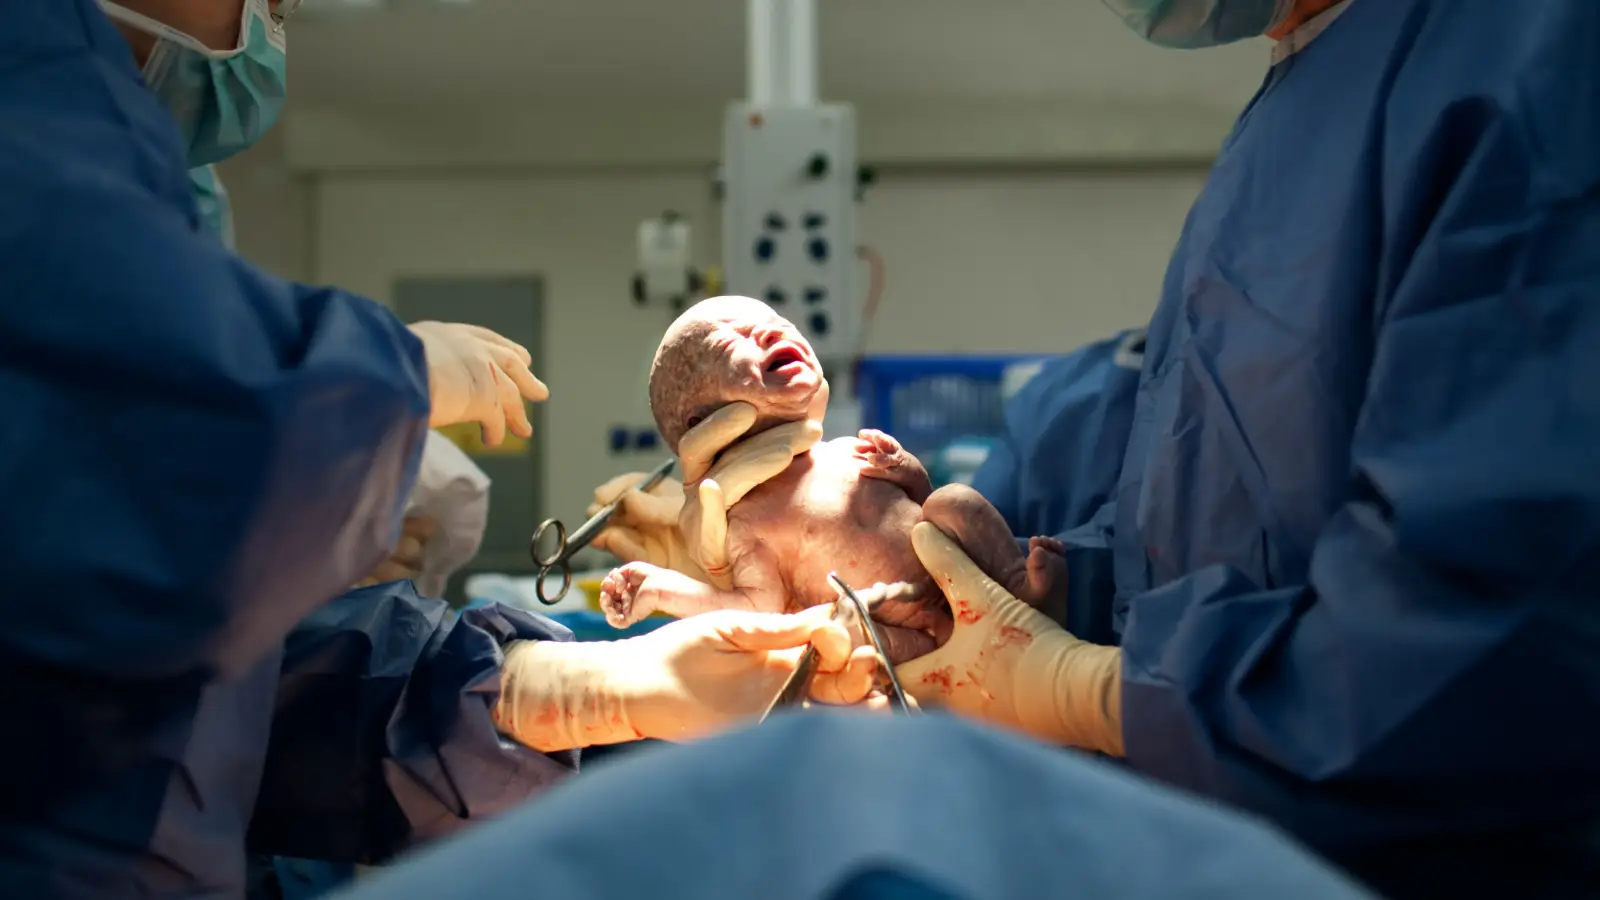 ما هي أسباب الولادة القيصرية؟ وما هي مضاعفاتها المحتملة؟